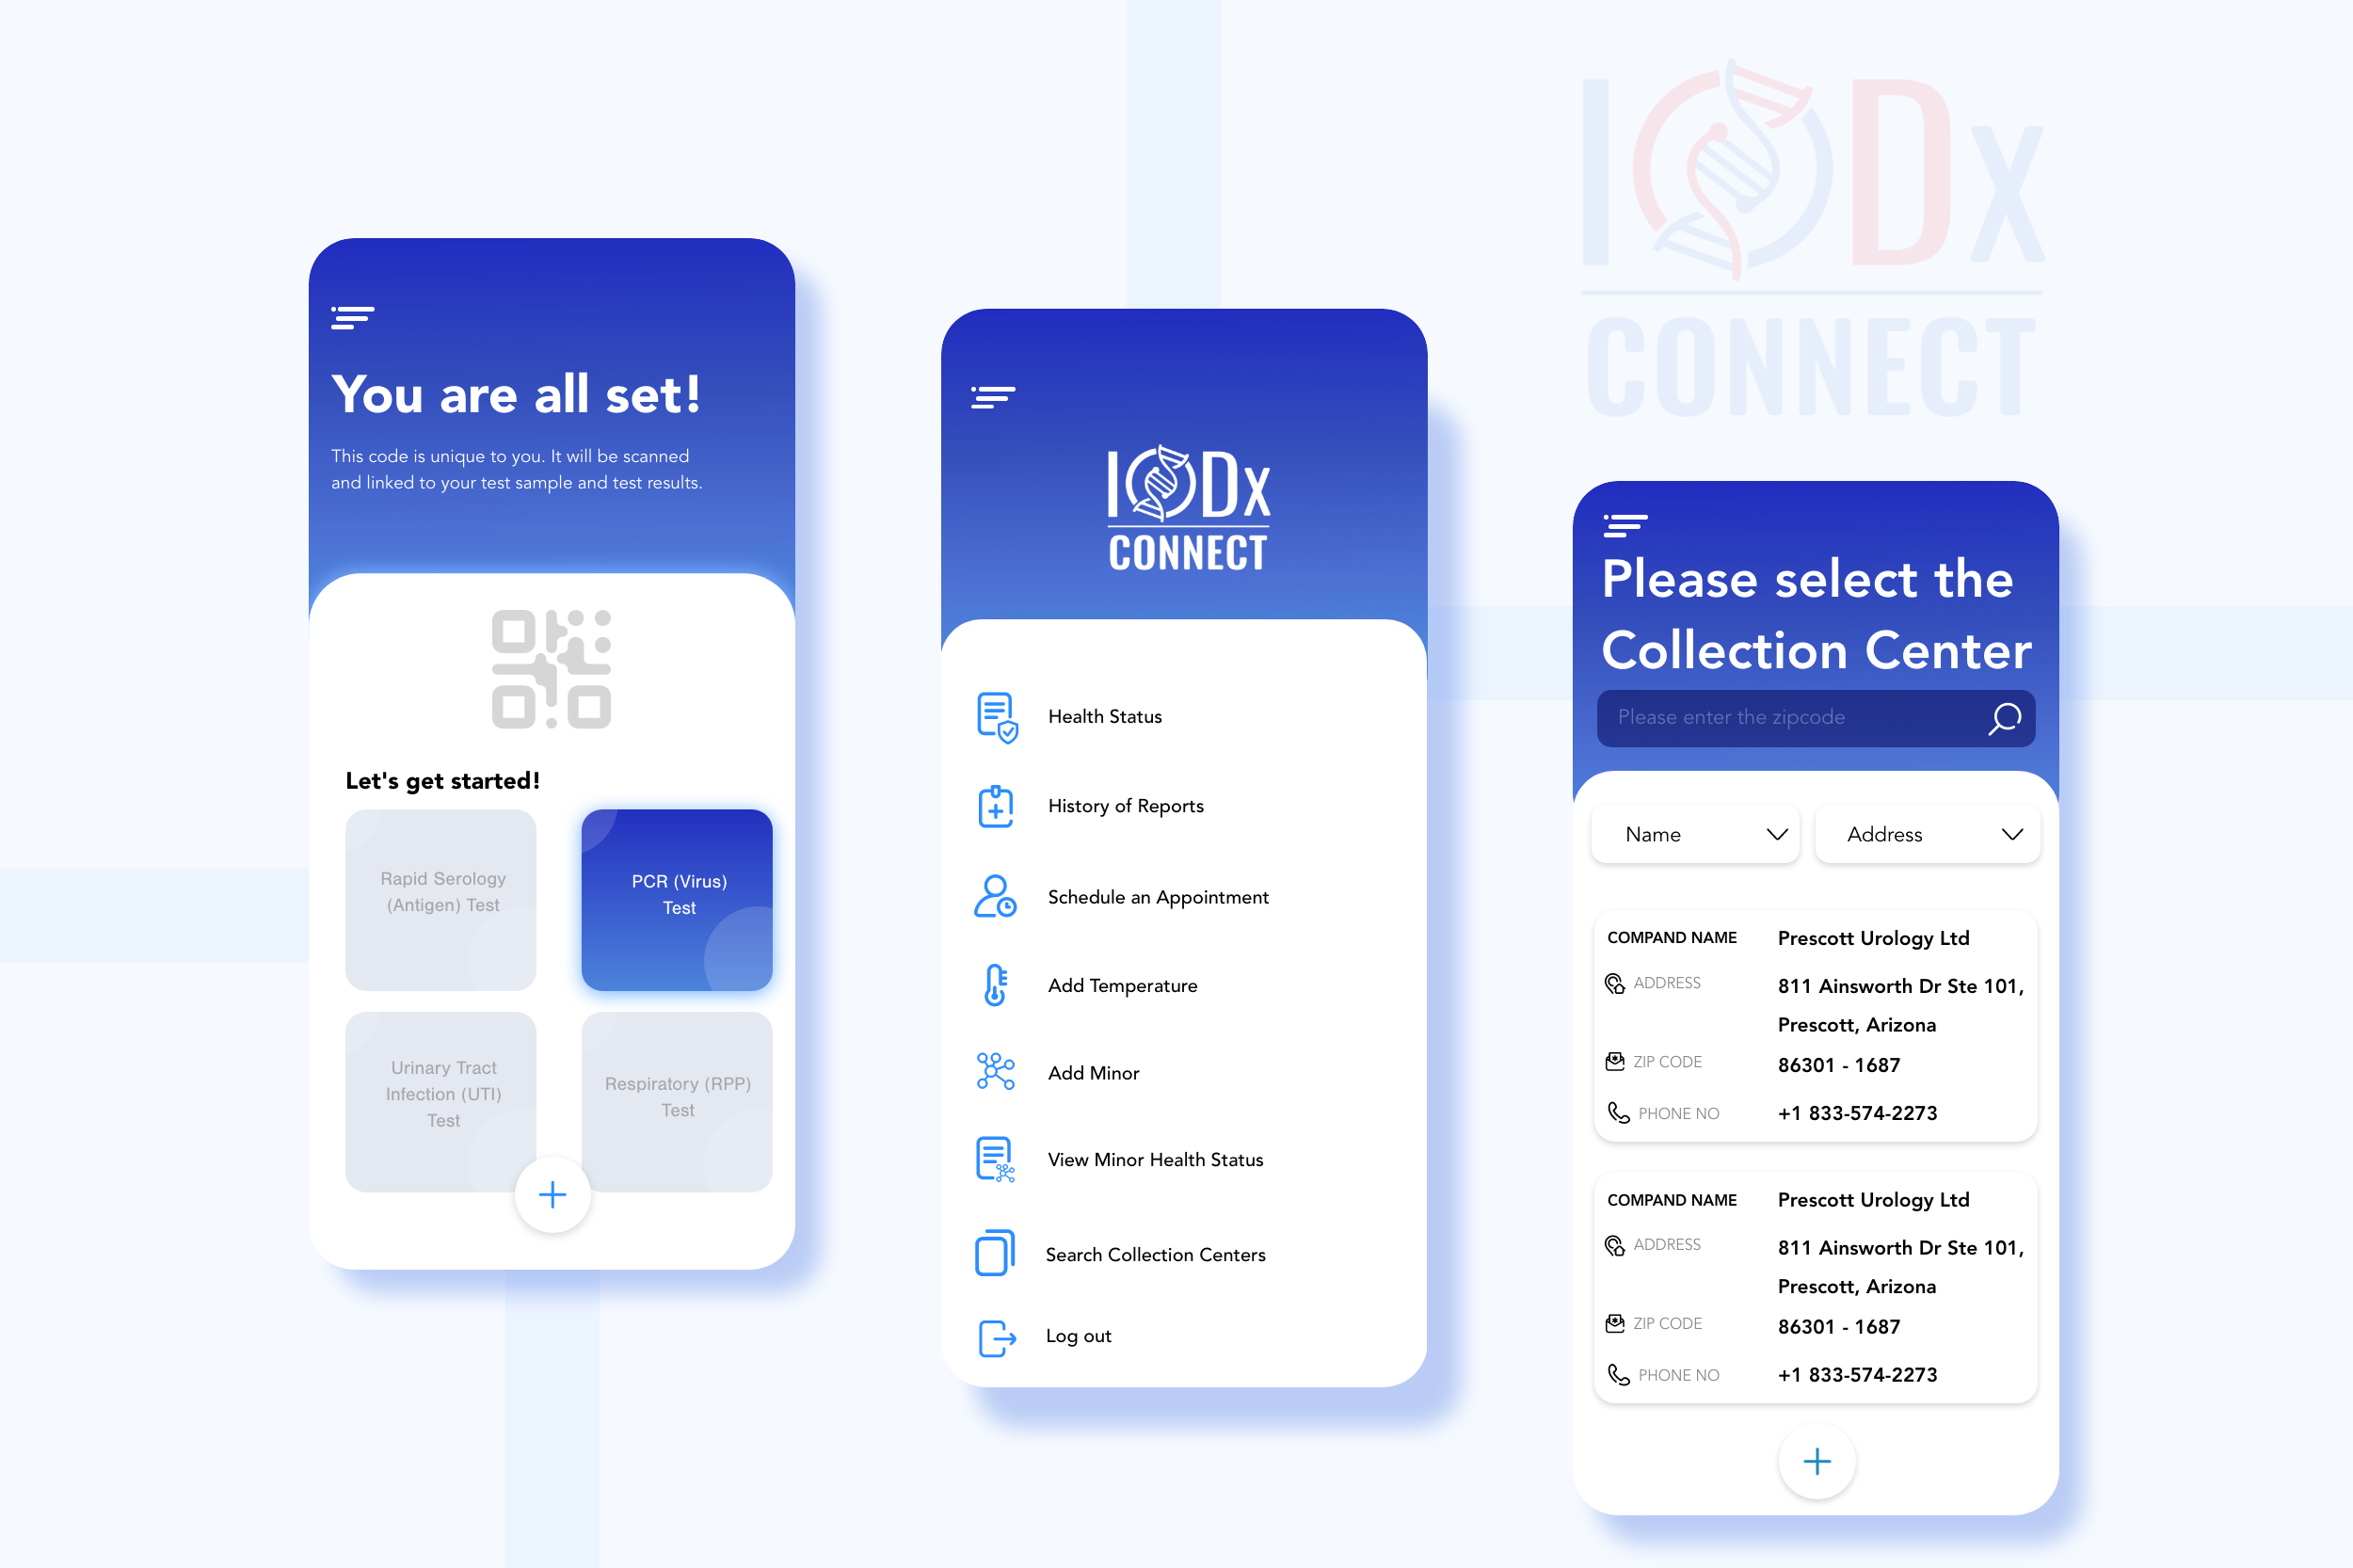 Iodx Connect